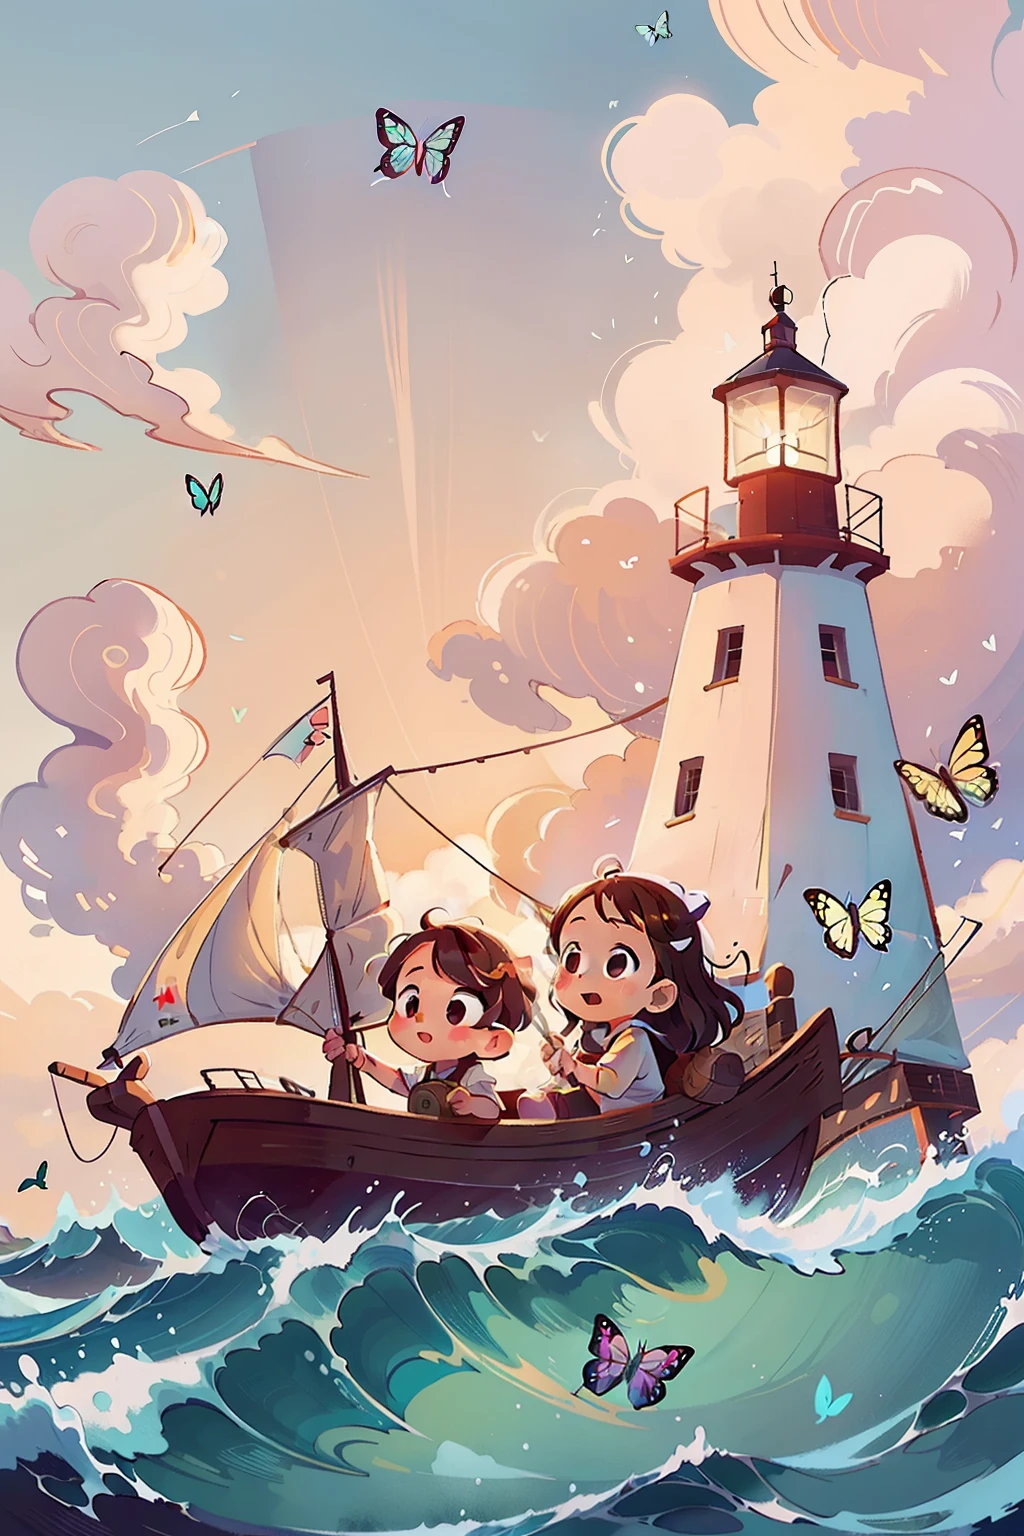 Erzeugt ein Bild von zwei sehr jungen Mädchen, die auf einem Boot segeln, Wellen, Meer, Himmel mit weißen Wolken. Bunte Schmetterlinge, Leuchtturm im Hintergrund,